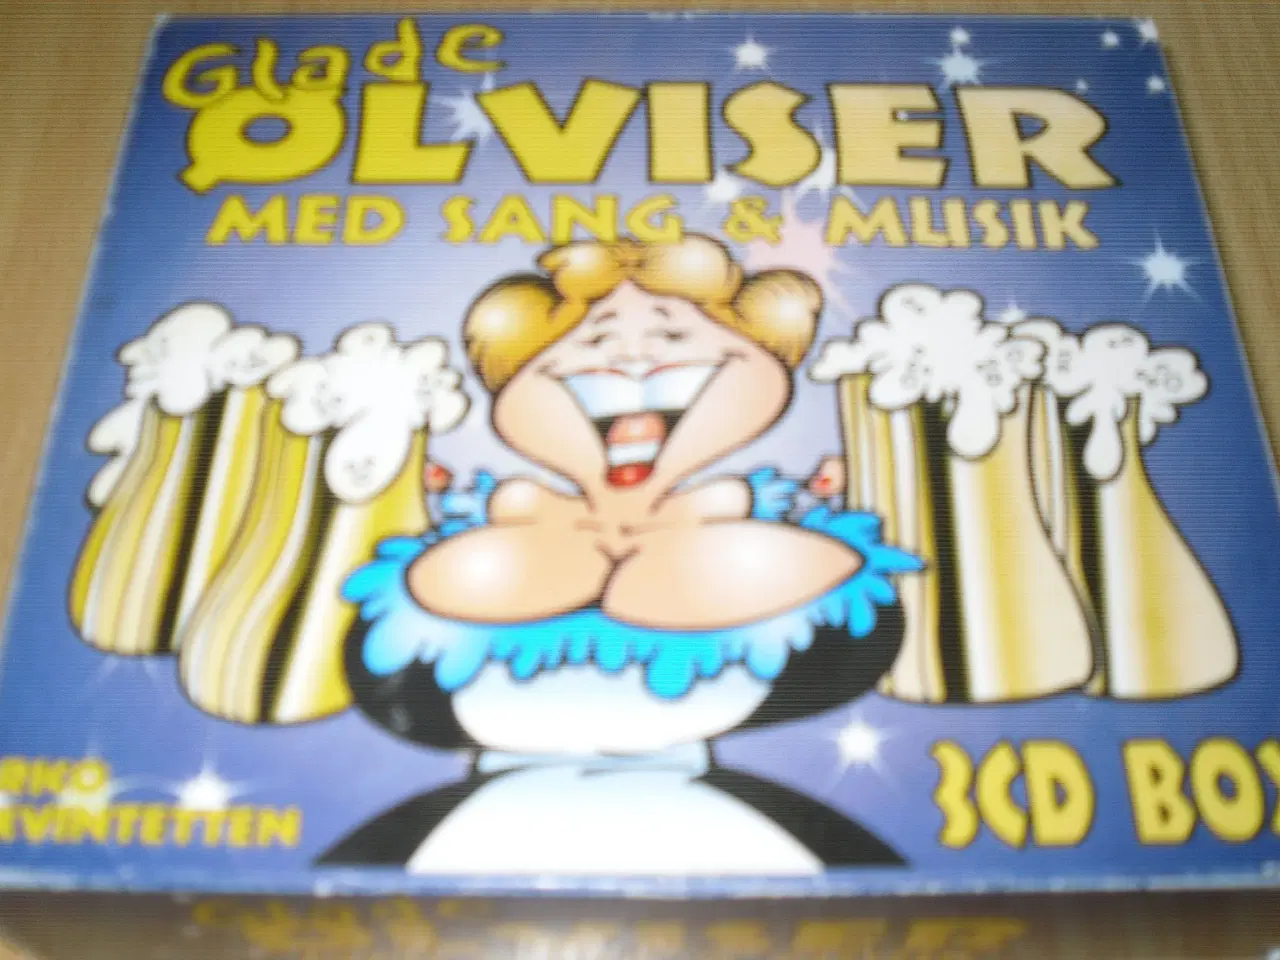 Billede 1 - Glade ØLVISER med Sang & Musik 3 cd box.